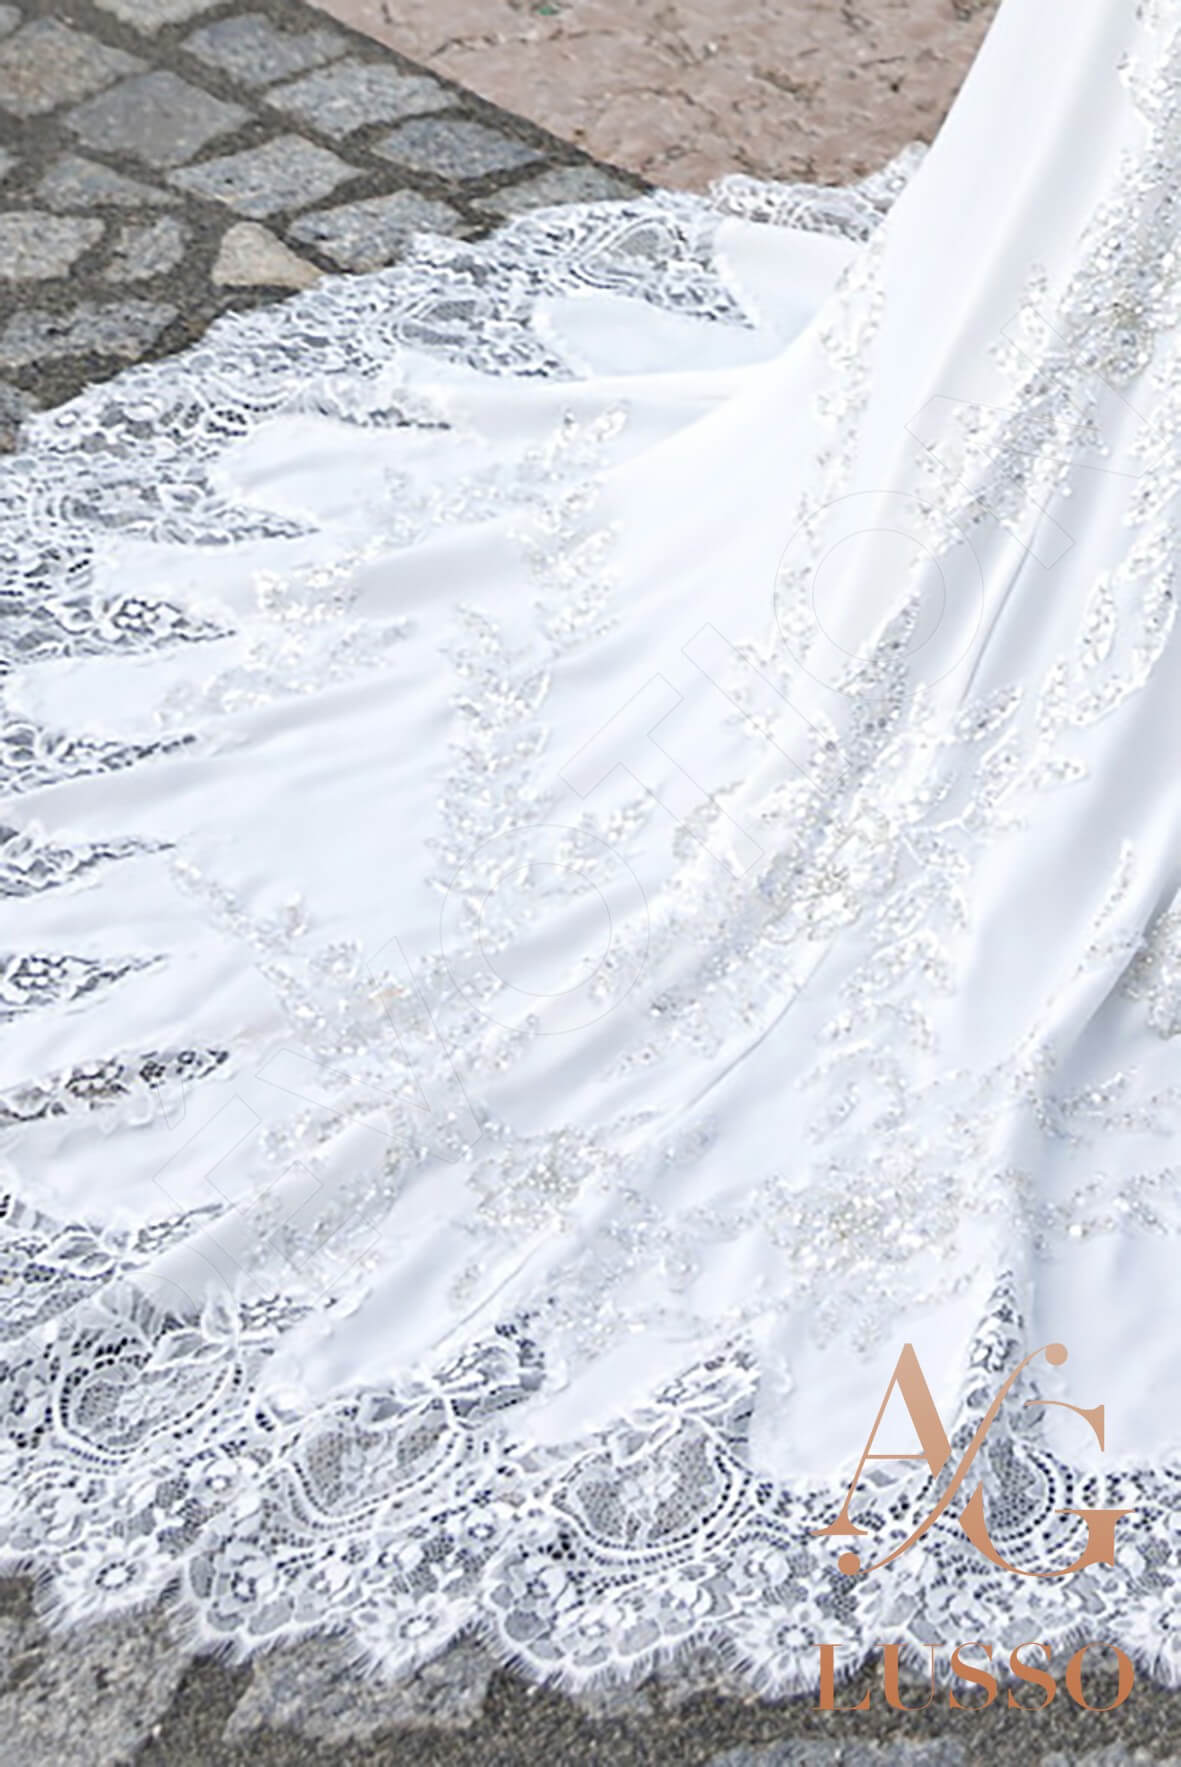 Raegan Trumpet/Mermaid Illusion Ivory Wedding dress